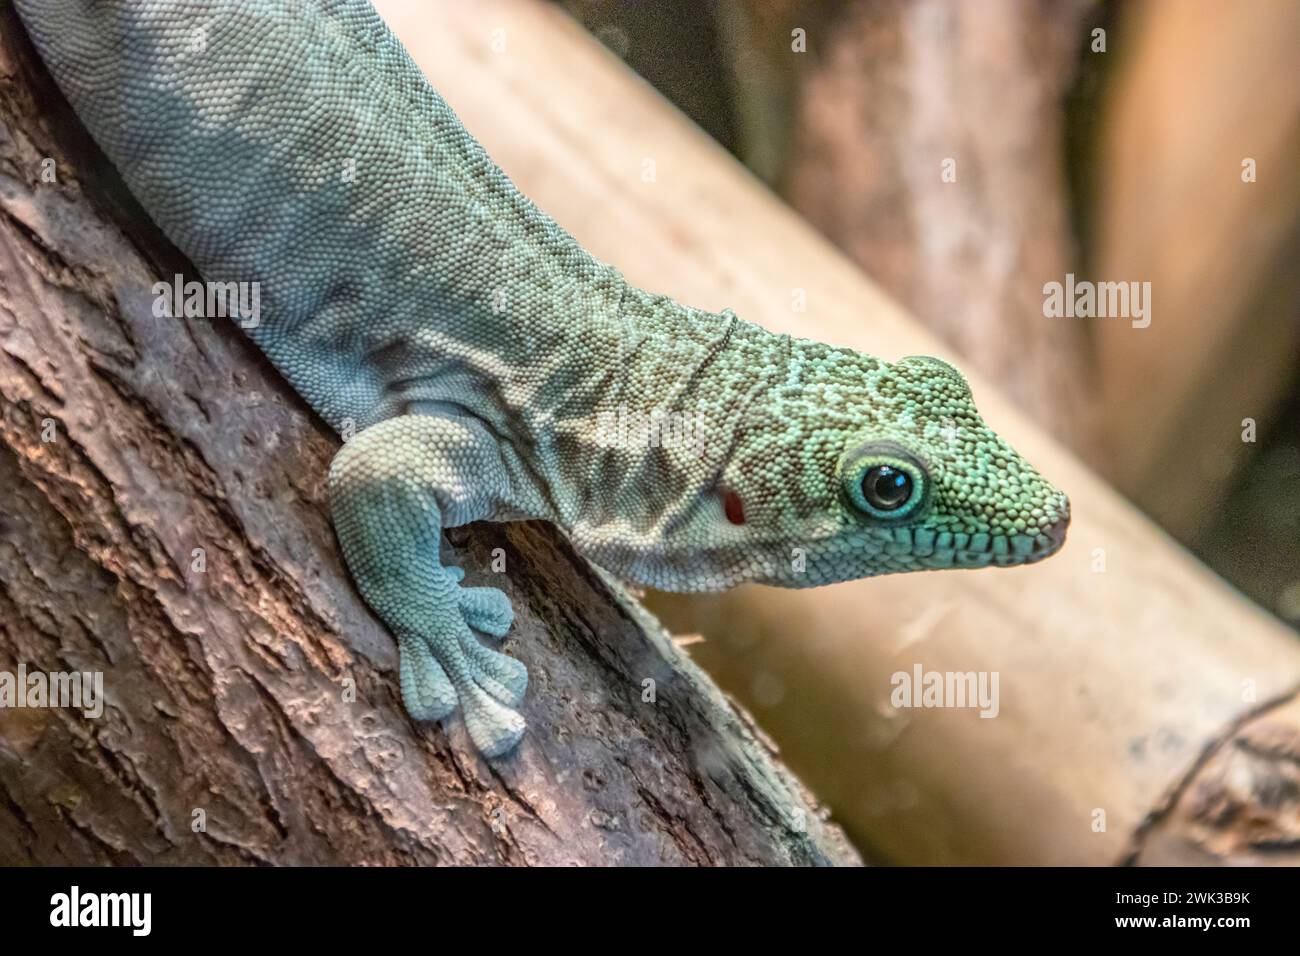 Le gecko des jours debout (Phelsuma standingi) est une espèce arboricole et diurne de lézard de la famille des Gekkonidae. Il est endémique du sud-ouest de Madagascar Banque D'Images